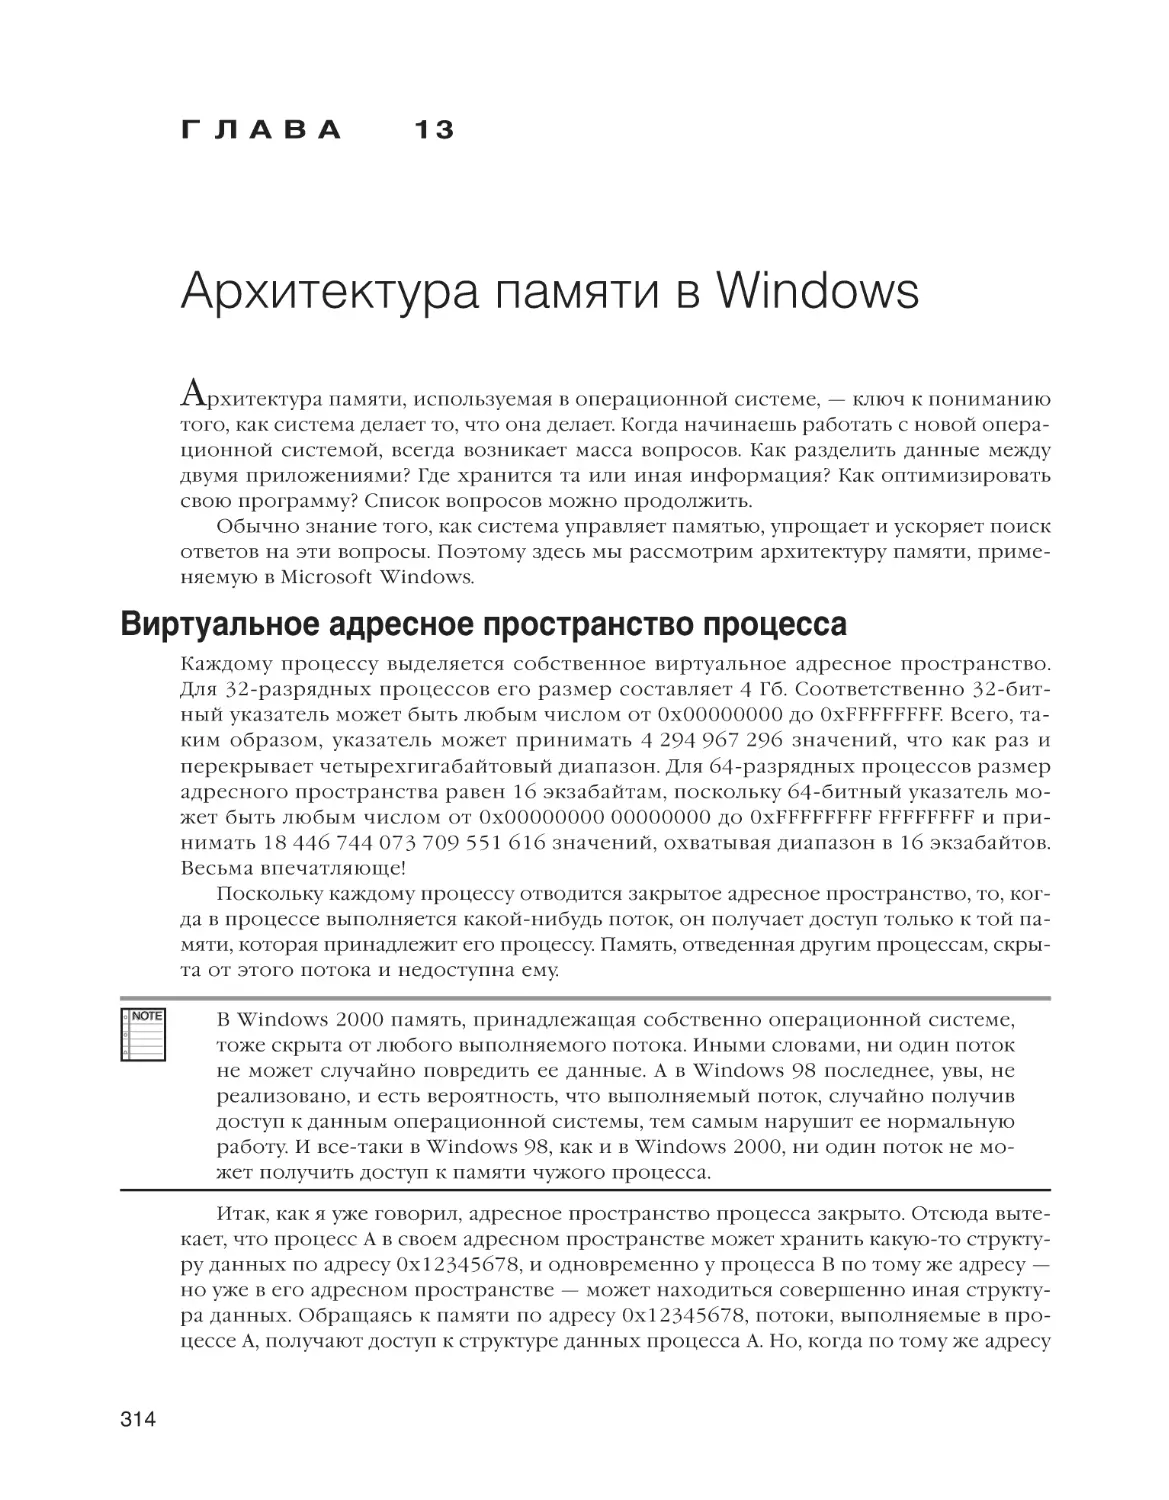 Глава 13. Архитектура памяти в Windows
Виртуальное адресное пространство процесса